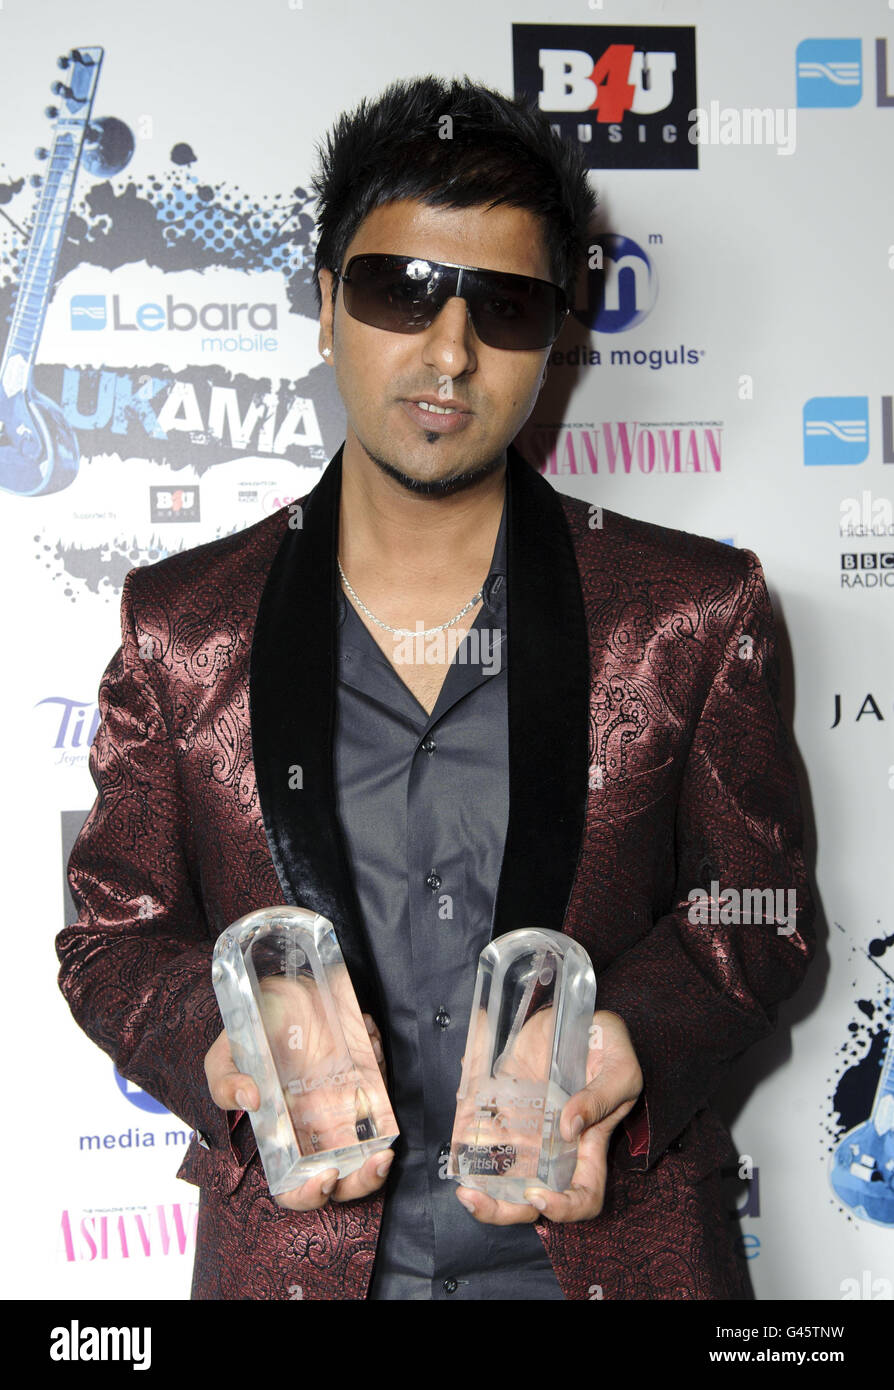 Punjabi par nature, lauréat du prix Best Selling Single et Best Album, photographié dans les coulisses des UK Asian Music Awards, au Roundhouse du nord de Londres. Banque D'Images